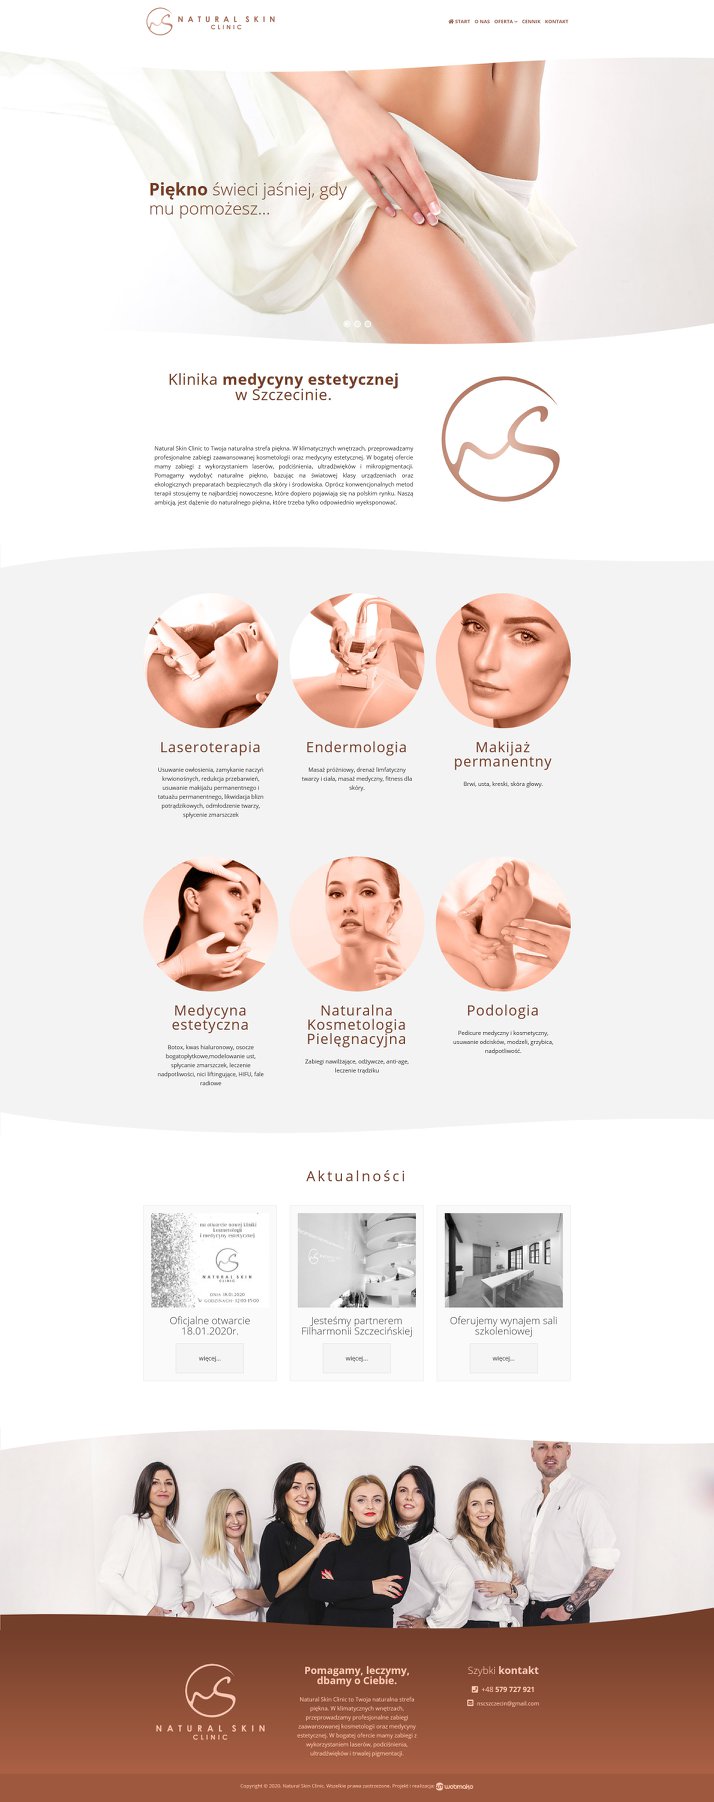 Realizacja strony internetowej dla Natural Skin Clinic